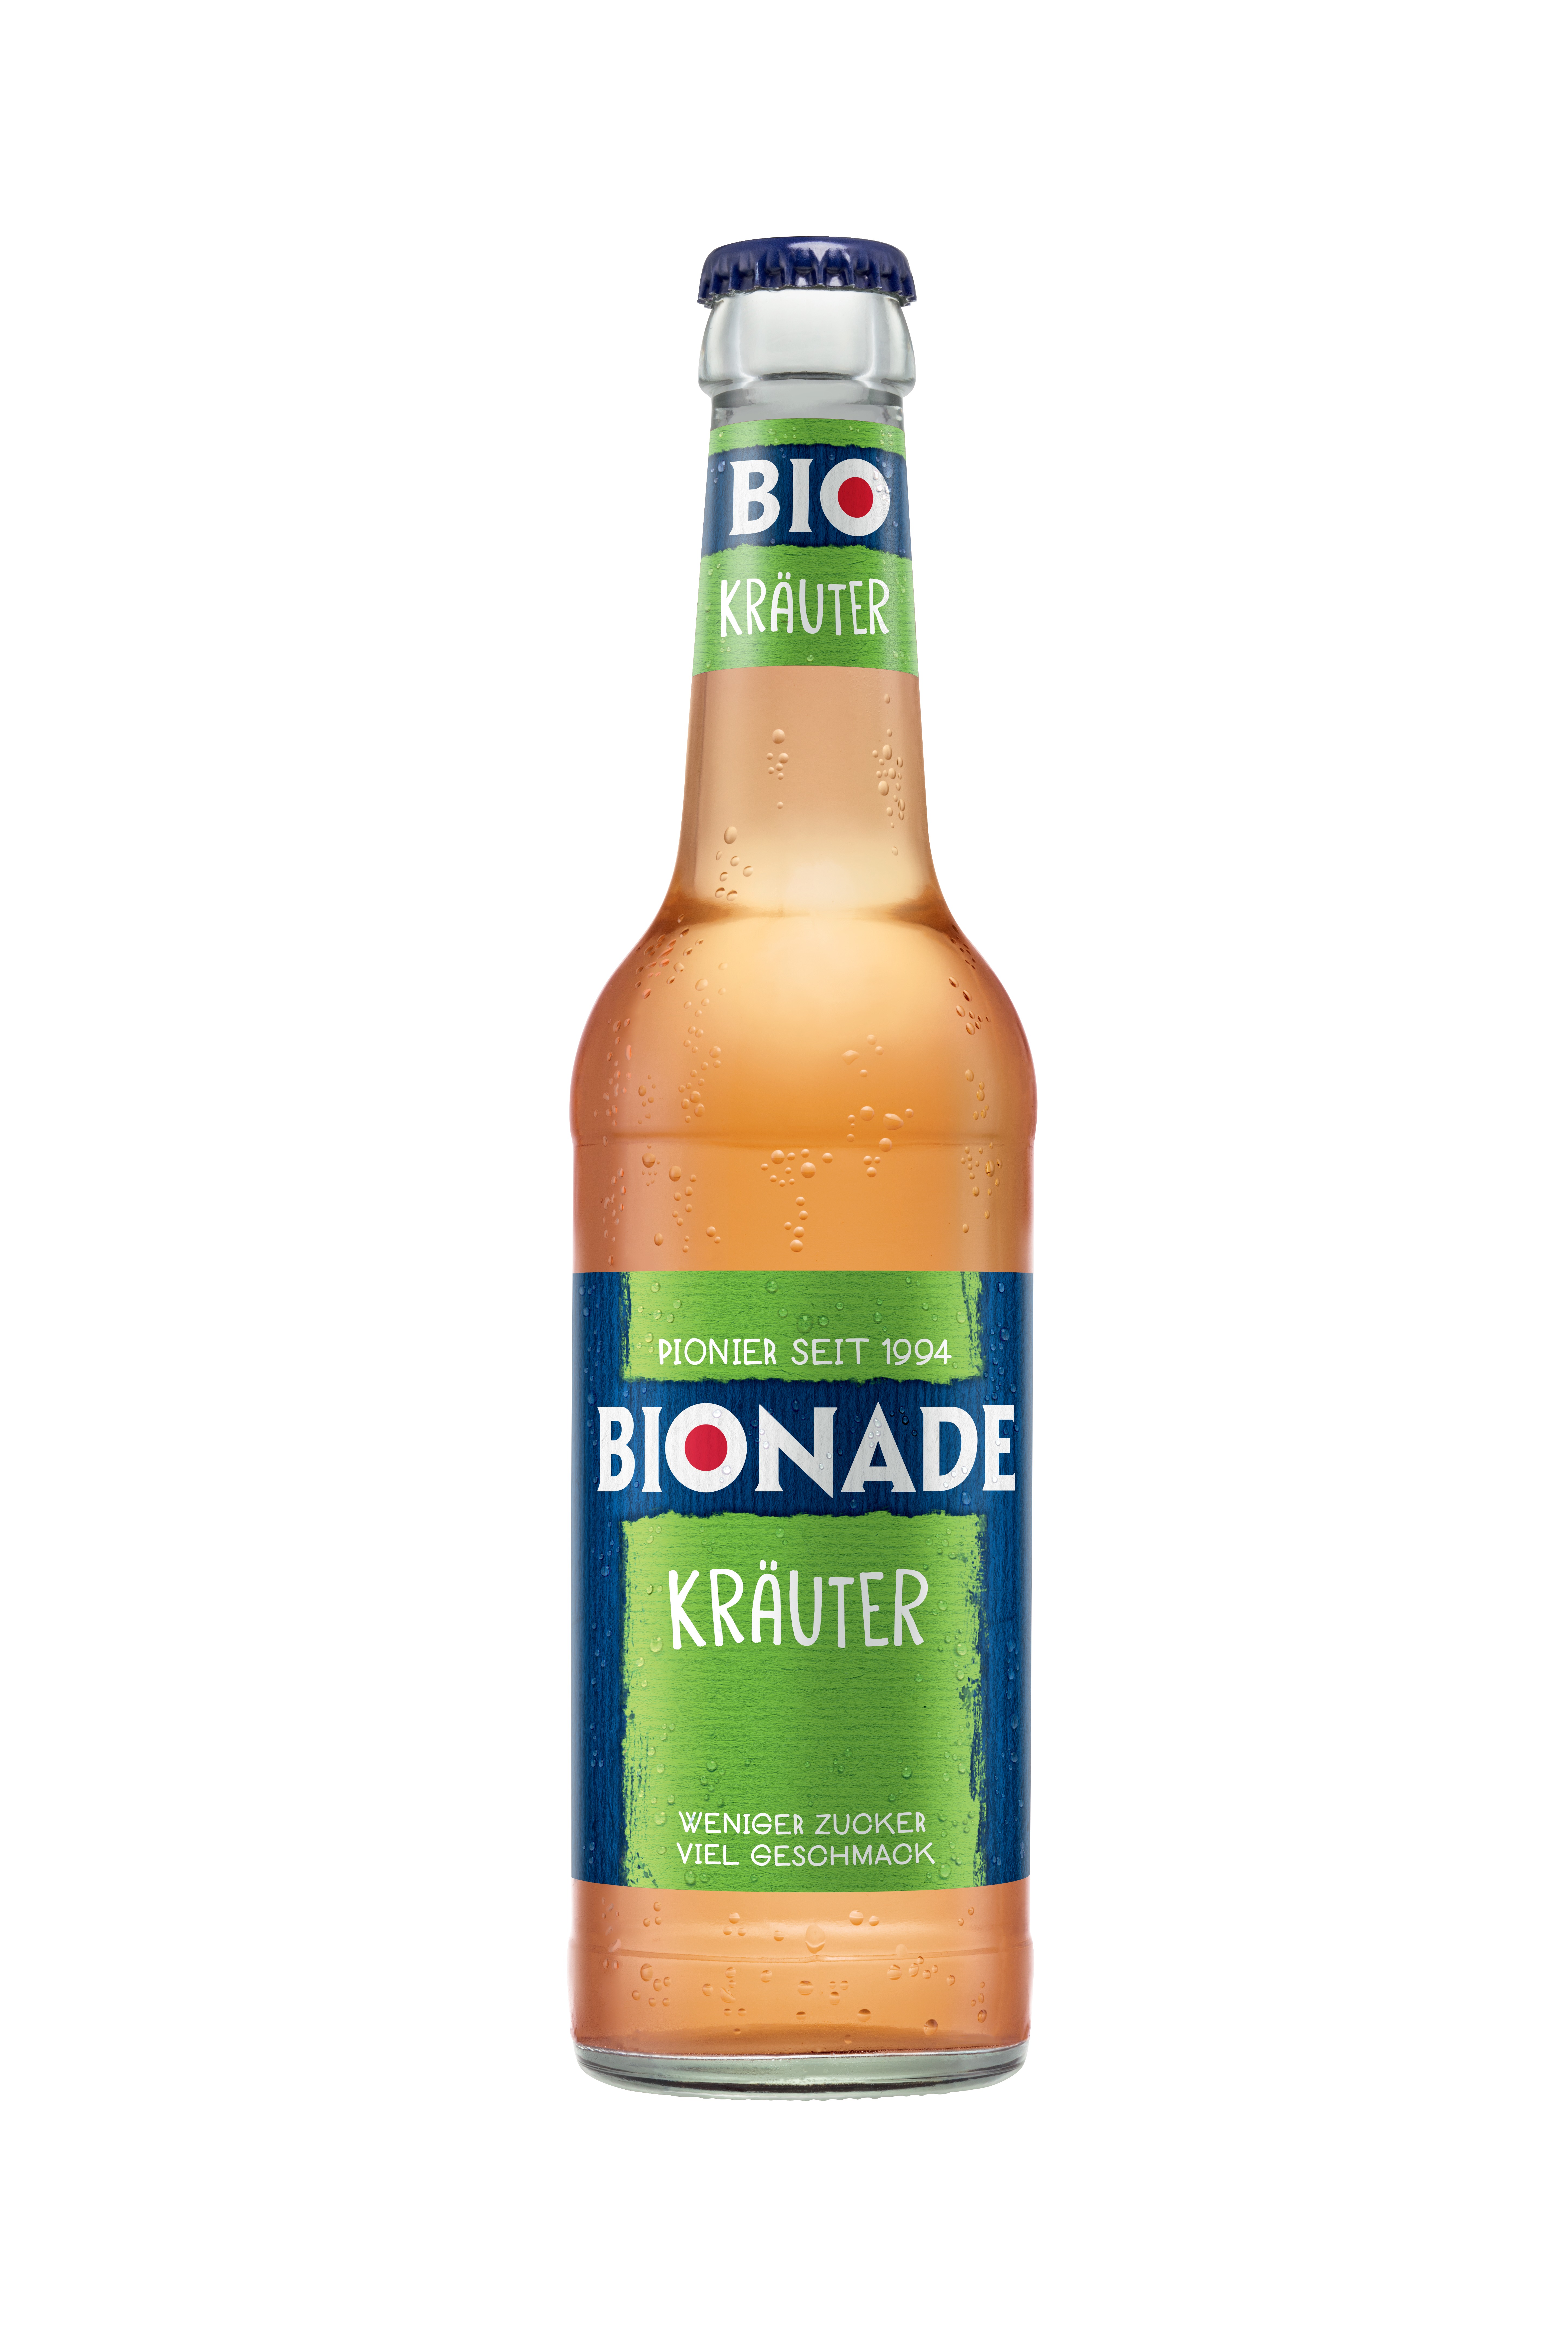 Bionade Kräuter